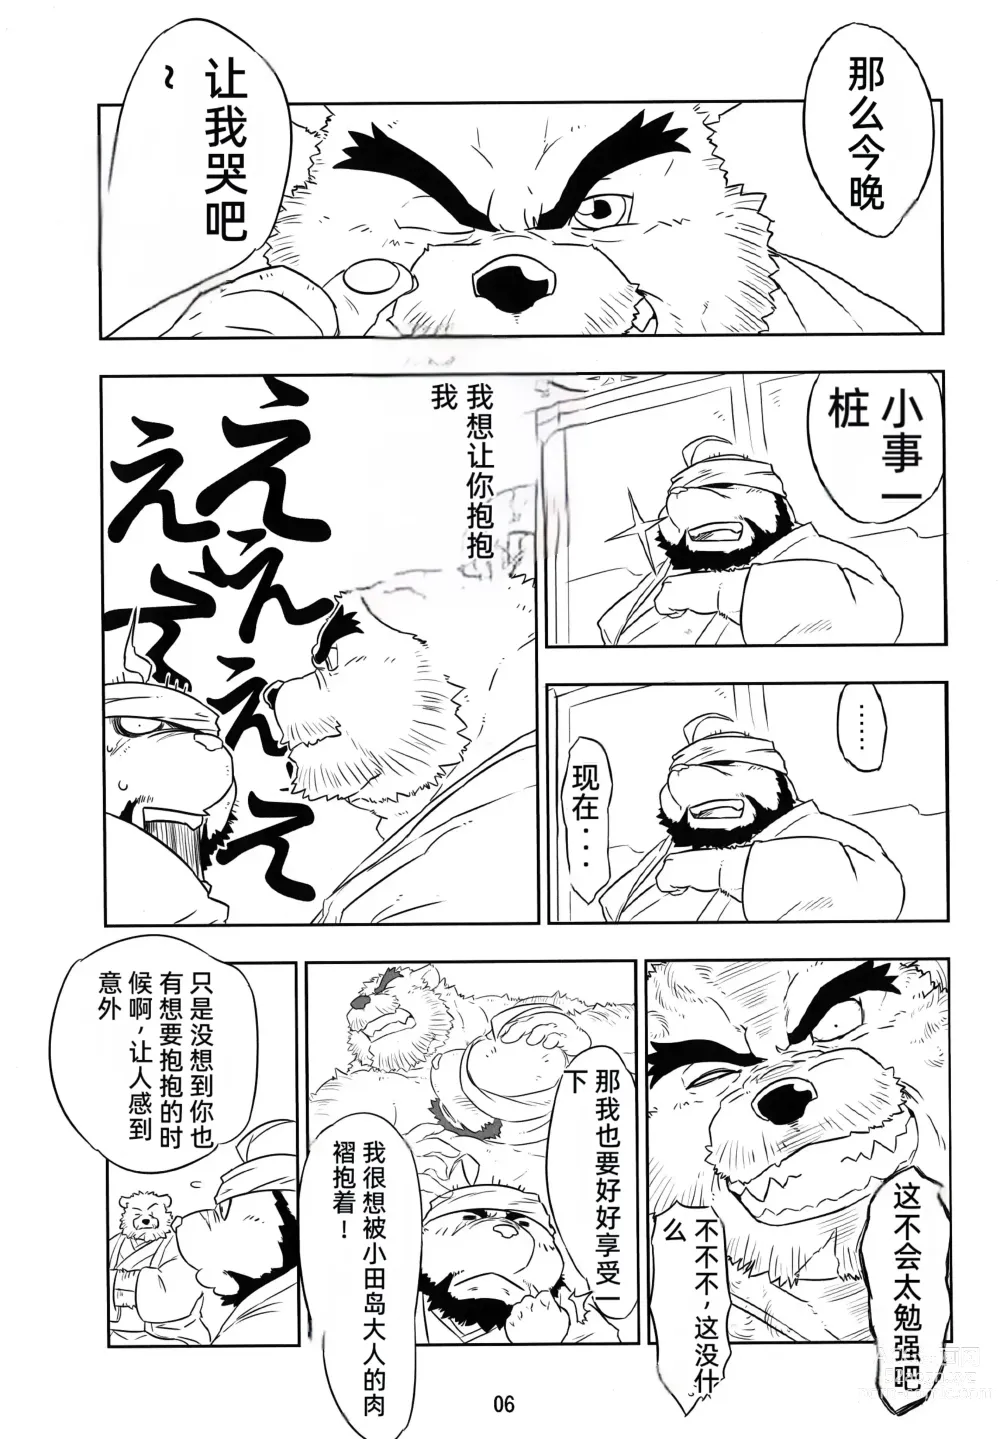 Page 5 of doujinshi Kemono no Roukaku - Utage